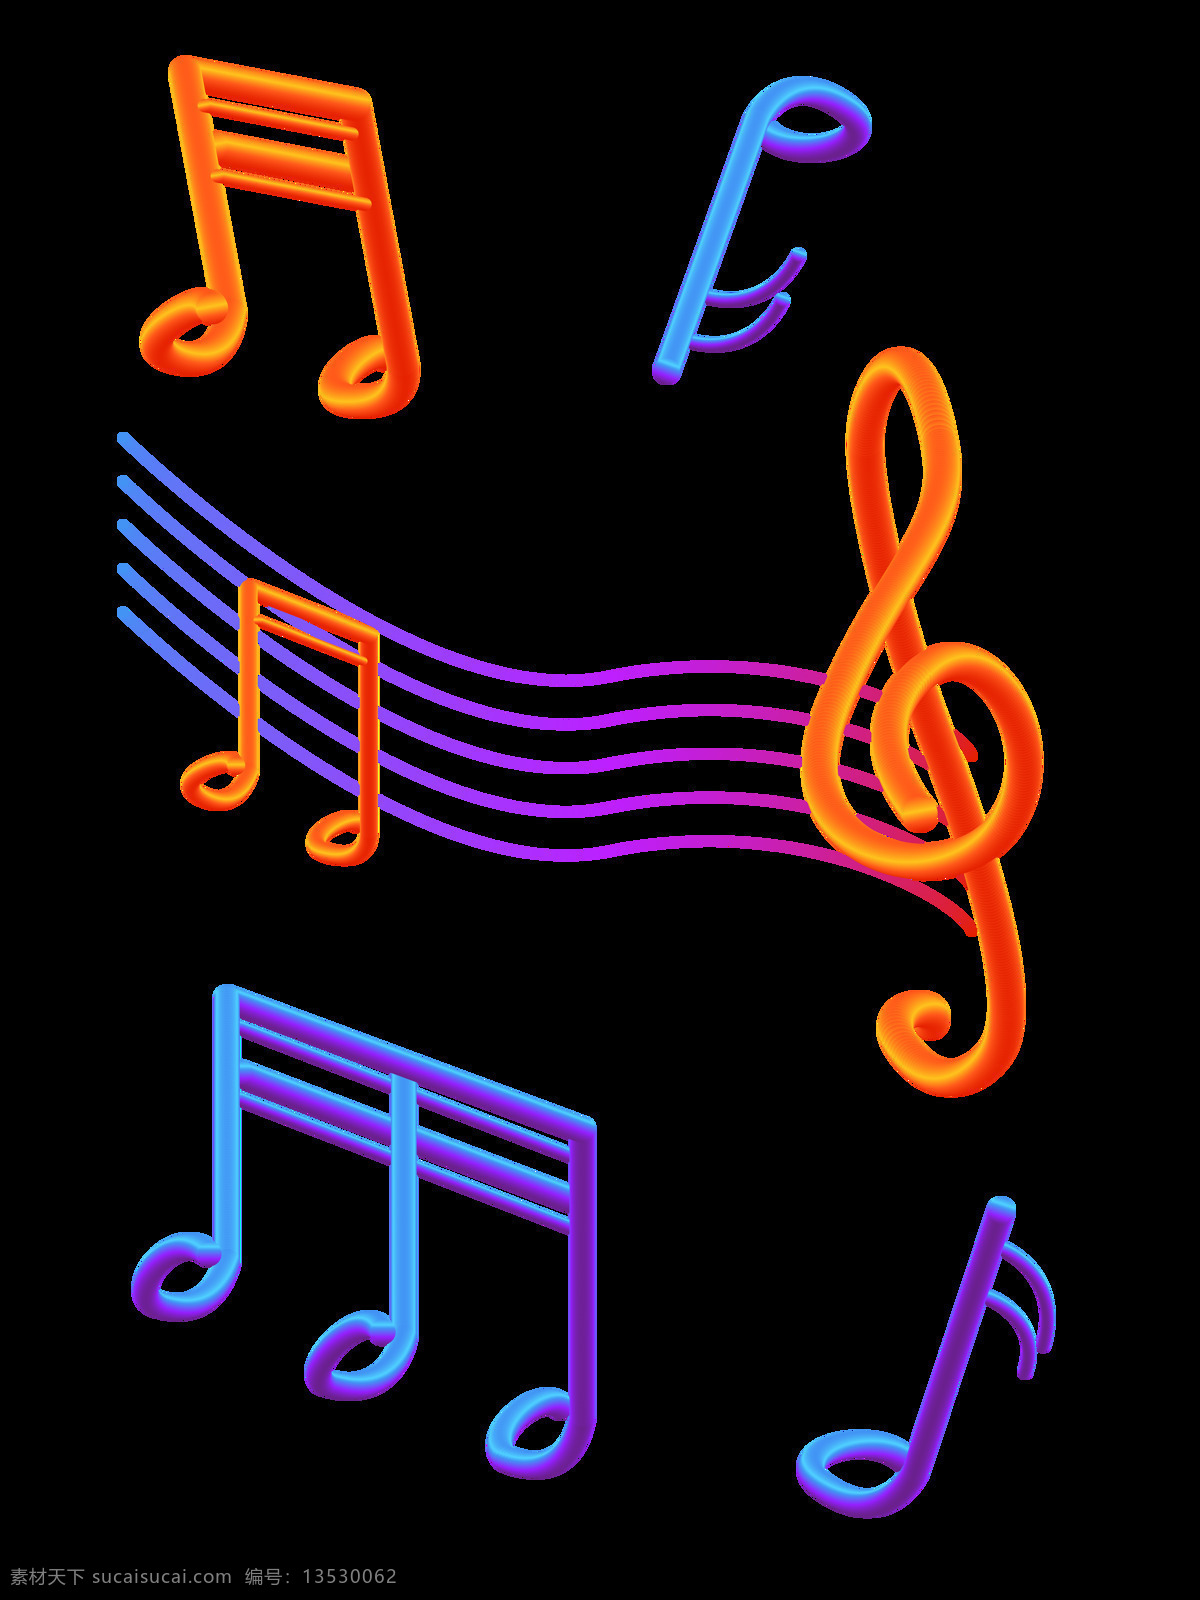 原创 立体 炫彩 渐变 音符 装饰 元素 蓝色 紫色 橙色 可商用 设计元素